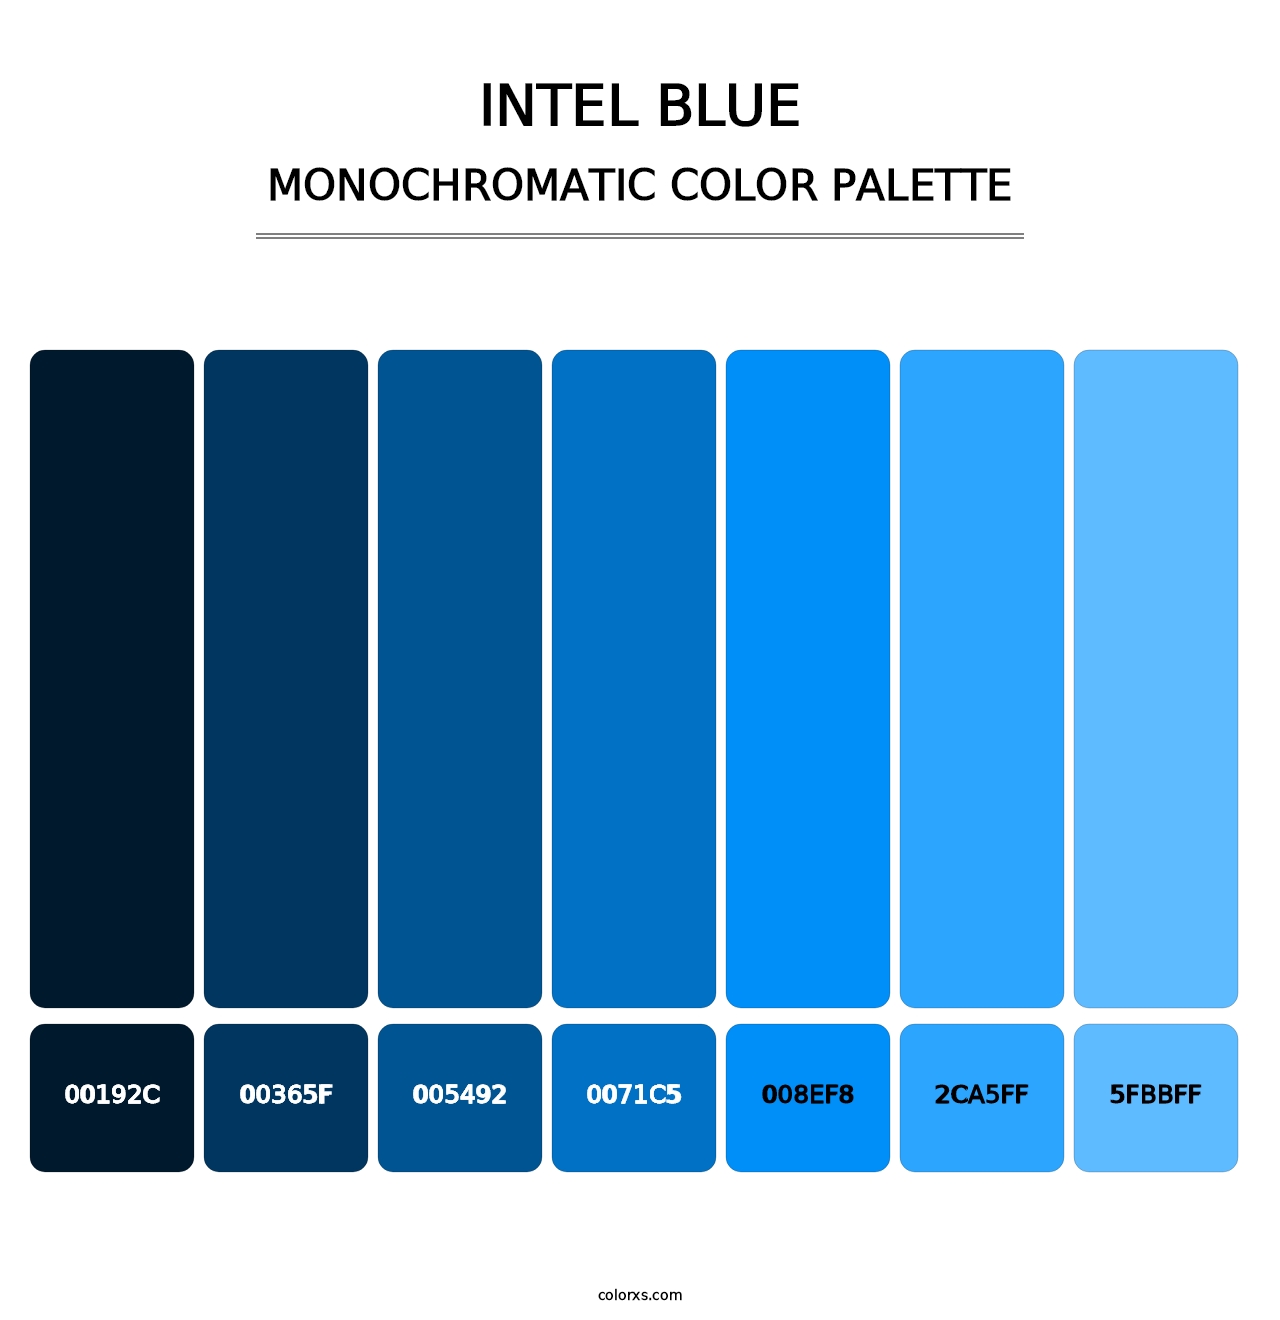 Intel Blue - Monochromatic Color Palette